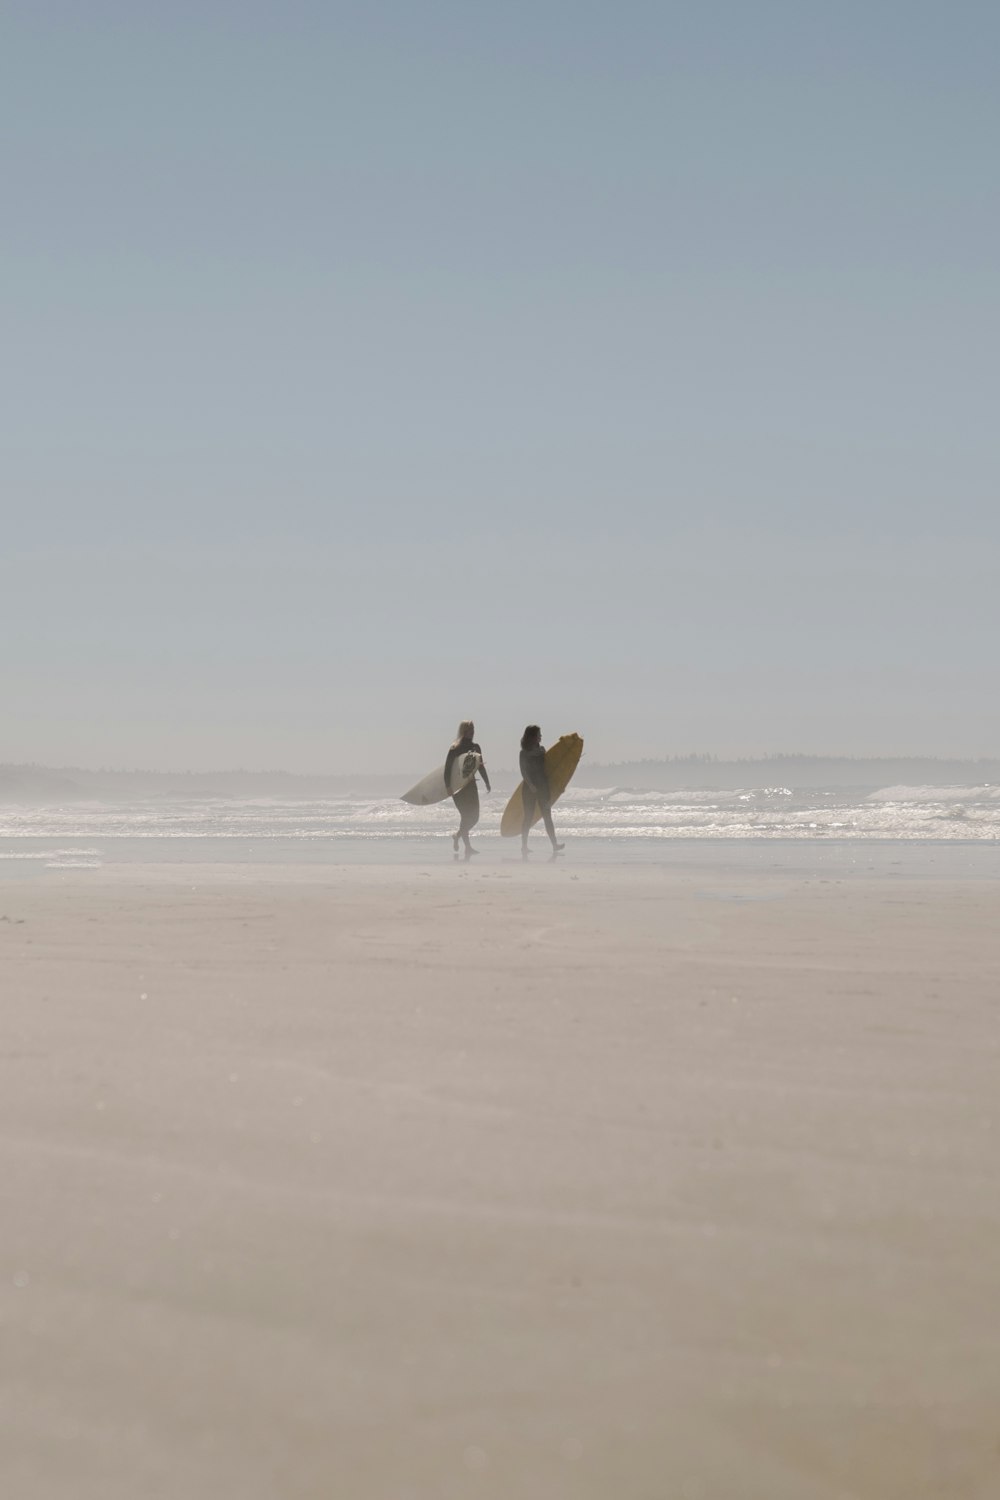 흰색 셔츠와 검은 바지를 입은 남자가 낮에 해변을 걷는 흰색 서핑보드를 들고 있다